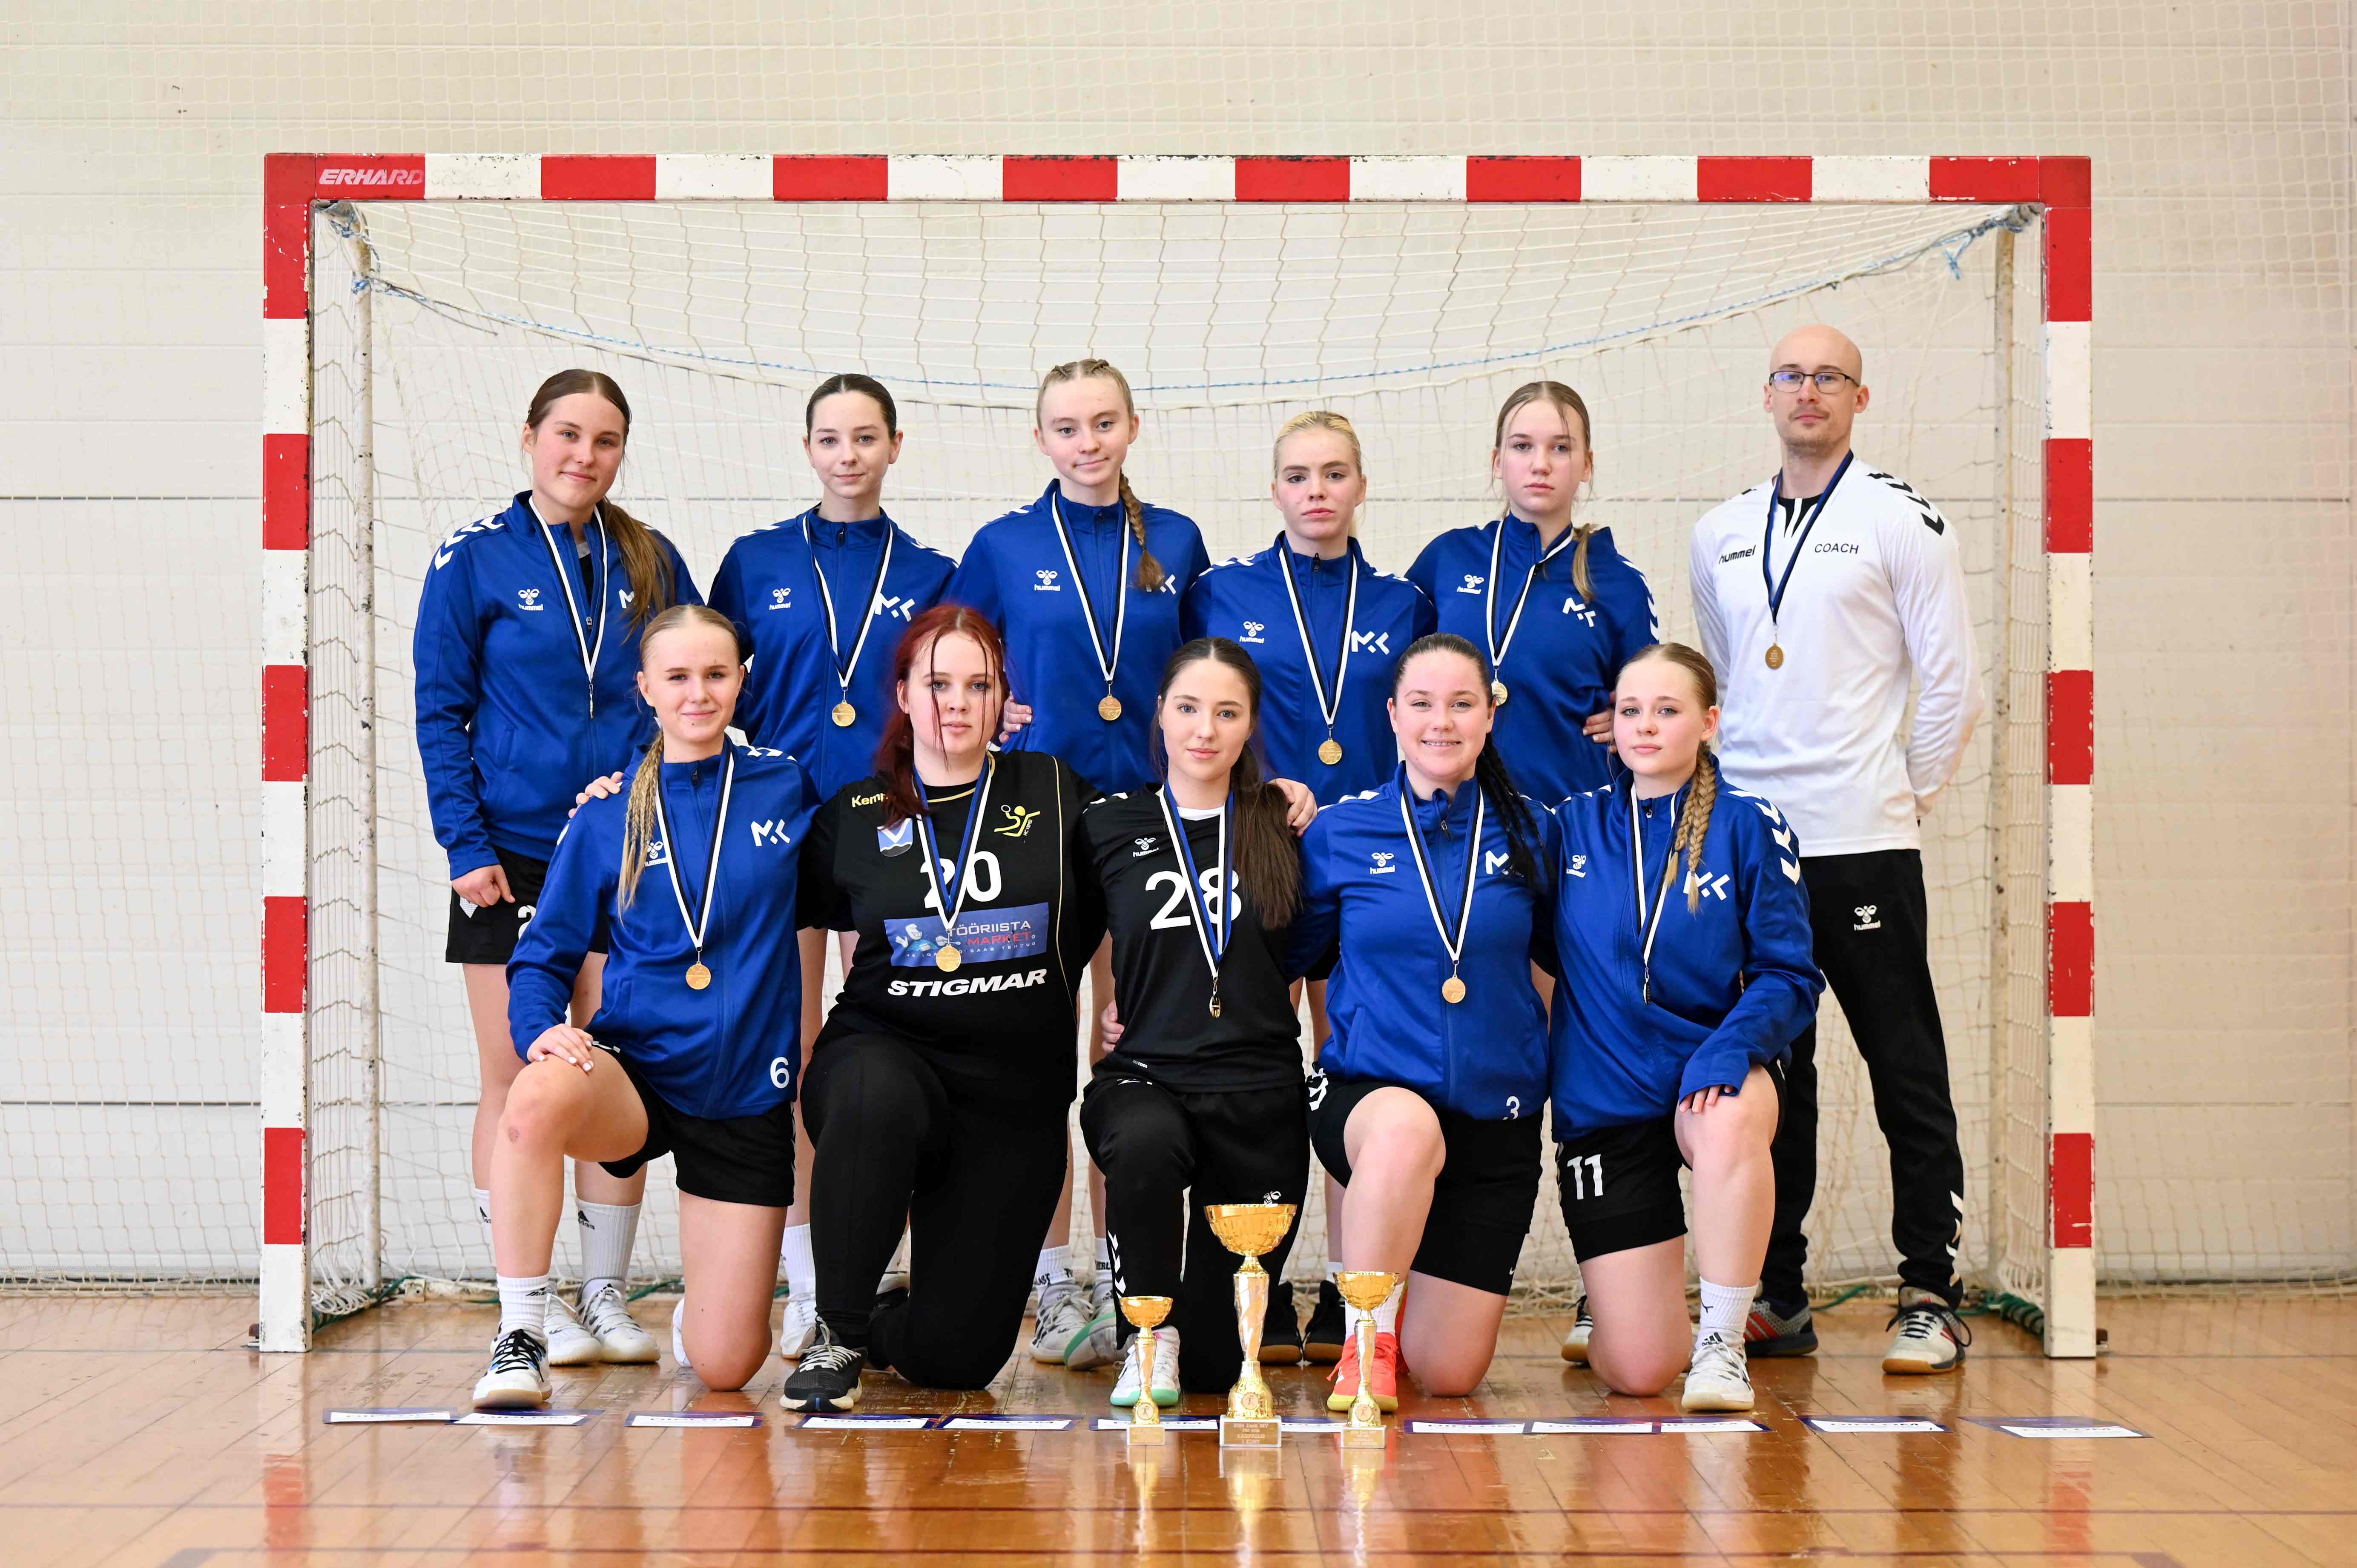 Mustamäe Käsipalliklubi võistkond on 2024 Eesti meister tütarlaste B2 vanuseklassi käsipallis